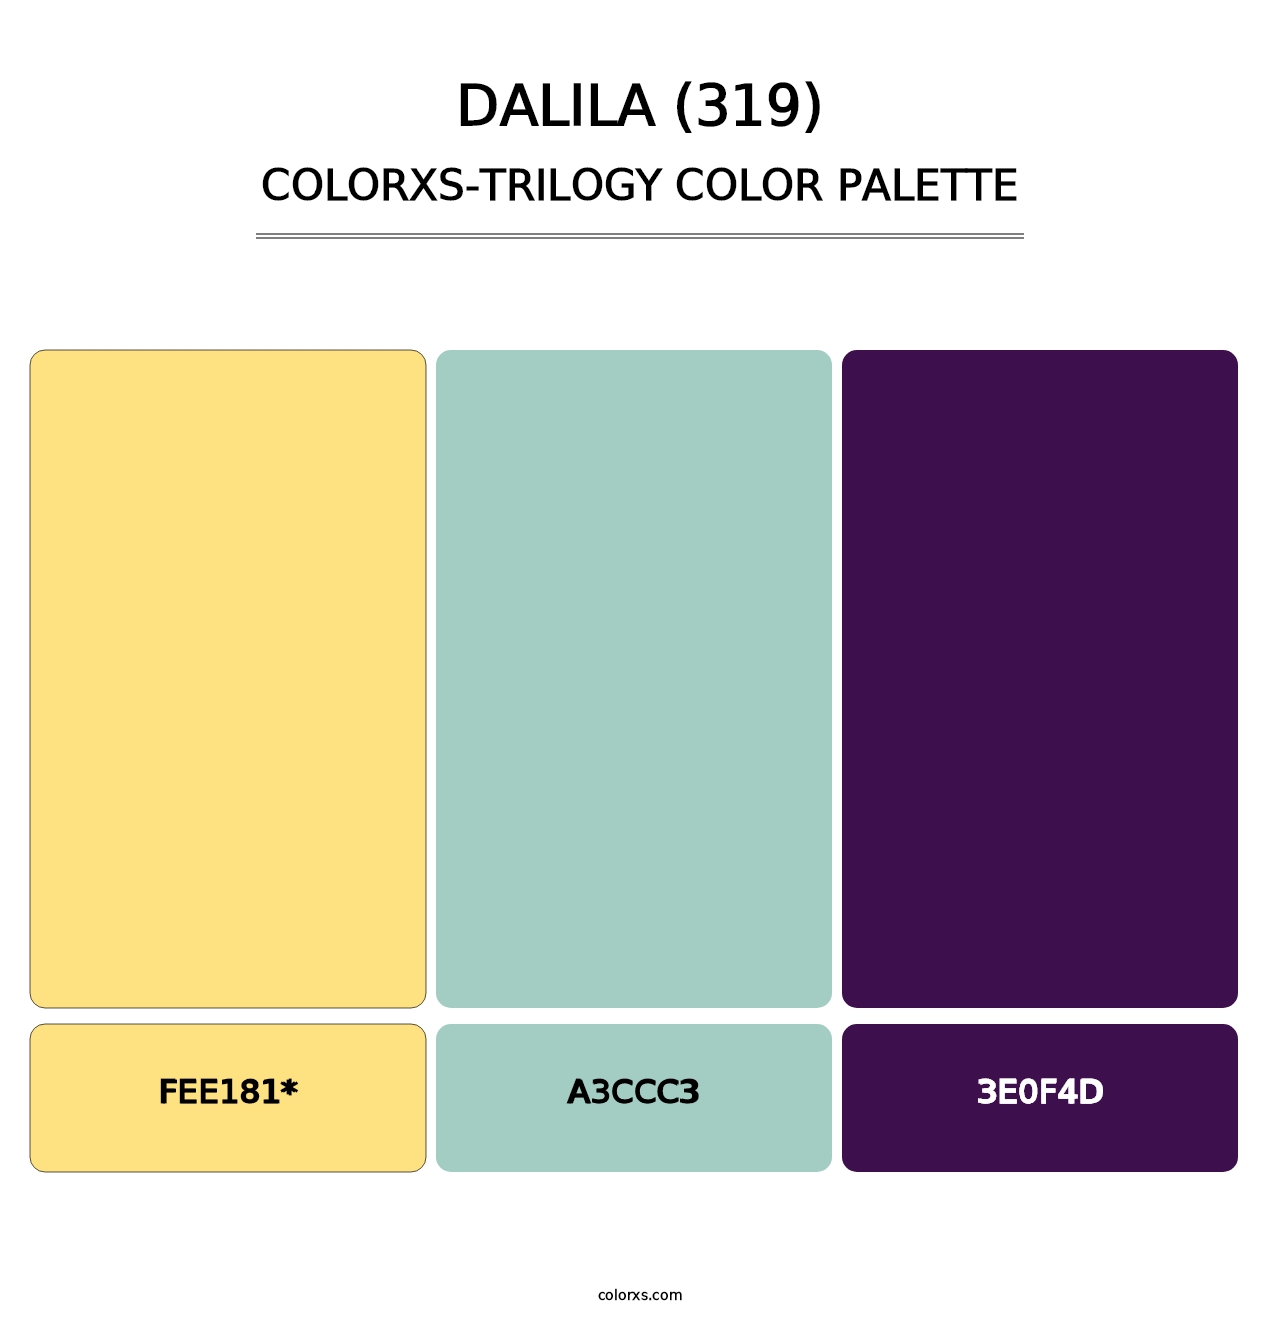 Dalila (319) - Colorxs Trilogy Palette